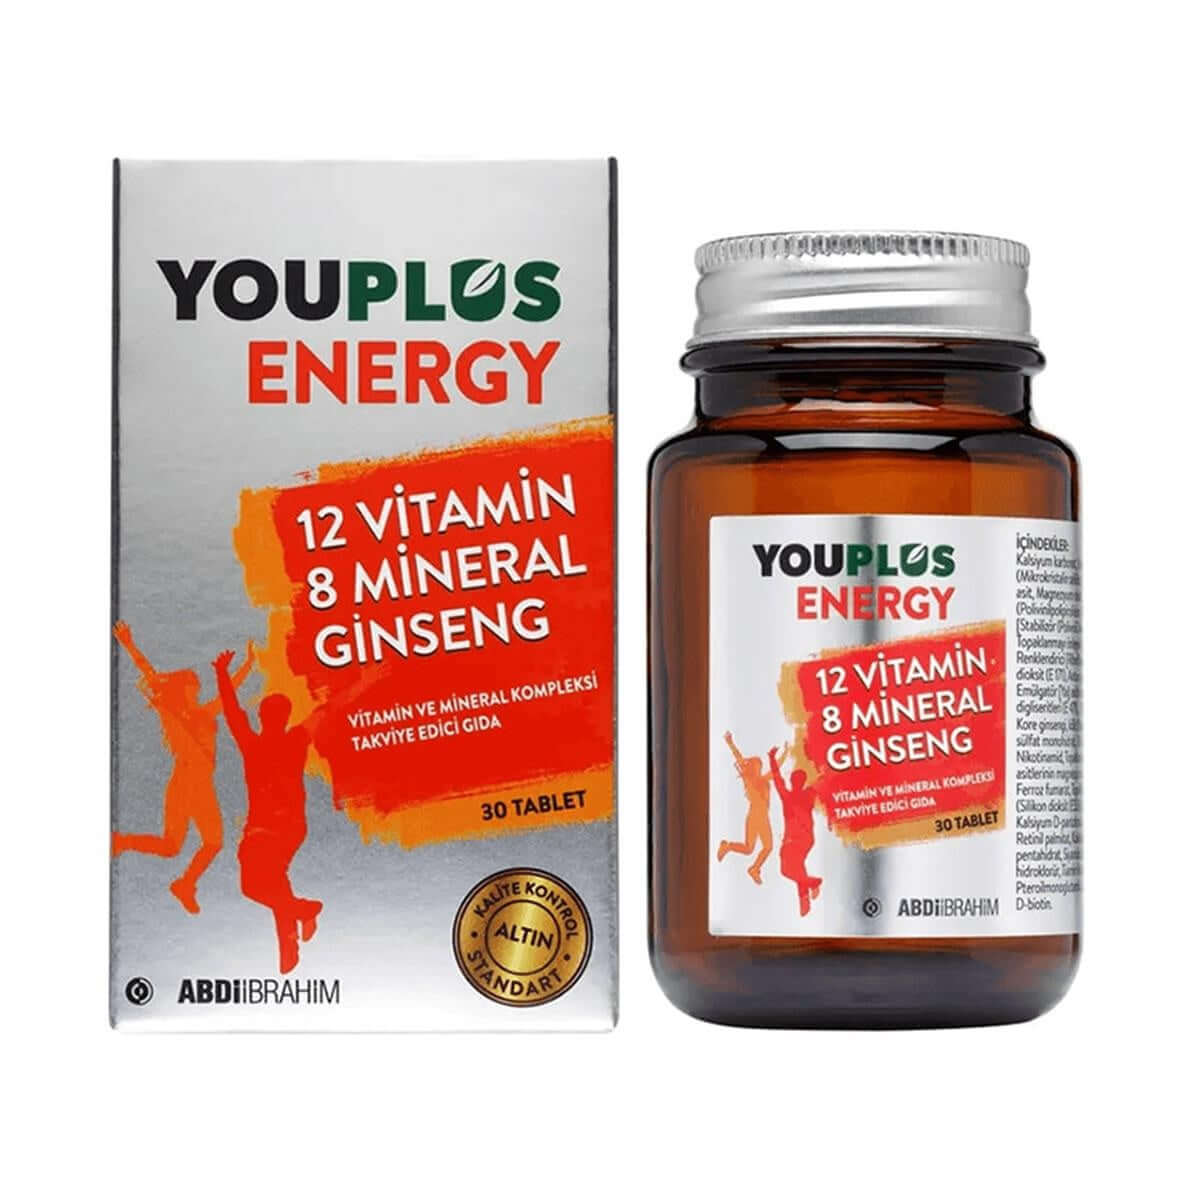 Youplus Energy Vitamin ve Mineral Kompleksi 30 Tablet-Youplus Energy Vitamin ve Mineral Kompleksi 30 Tablet 12 Vitamin 8 Mineral ve Ginseng içeren takviye edici gıda İçeriğinde C, B1, B2, B3, B5, B6, B12 vitaminleri ve Biotin, Demir, Magnezyum, Manganez,